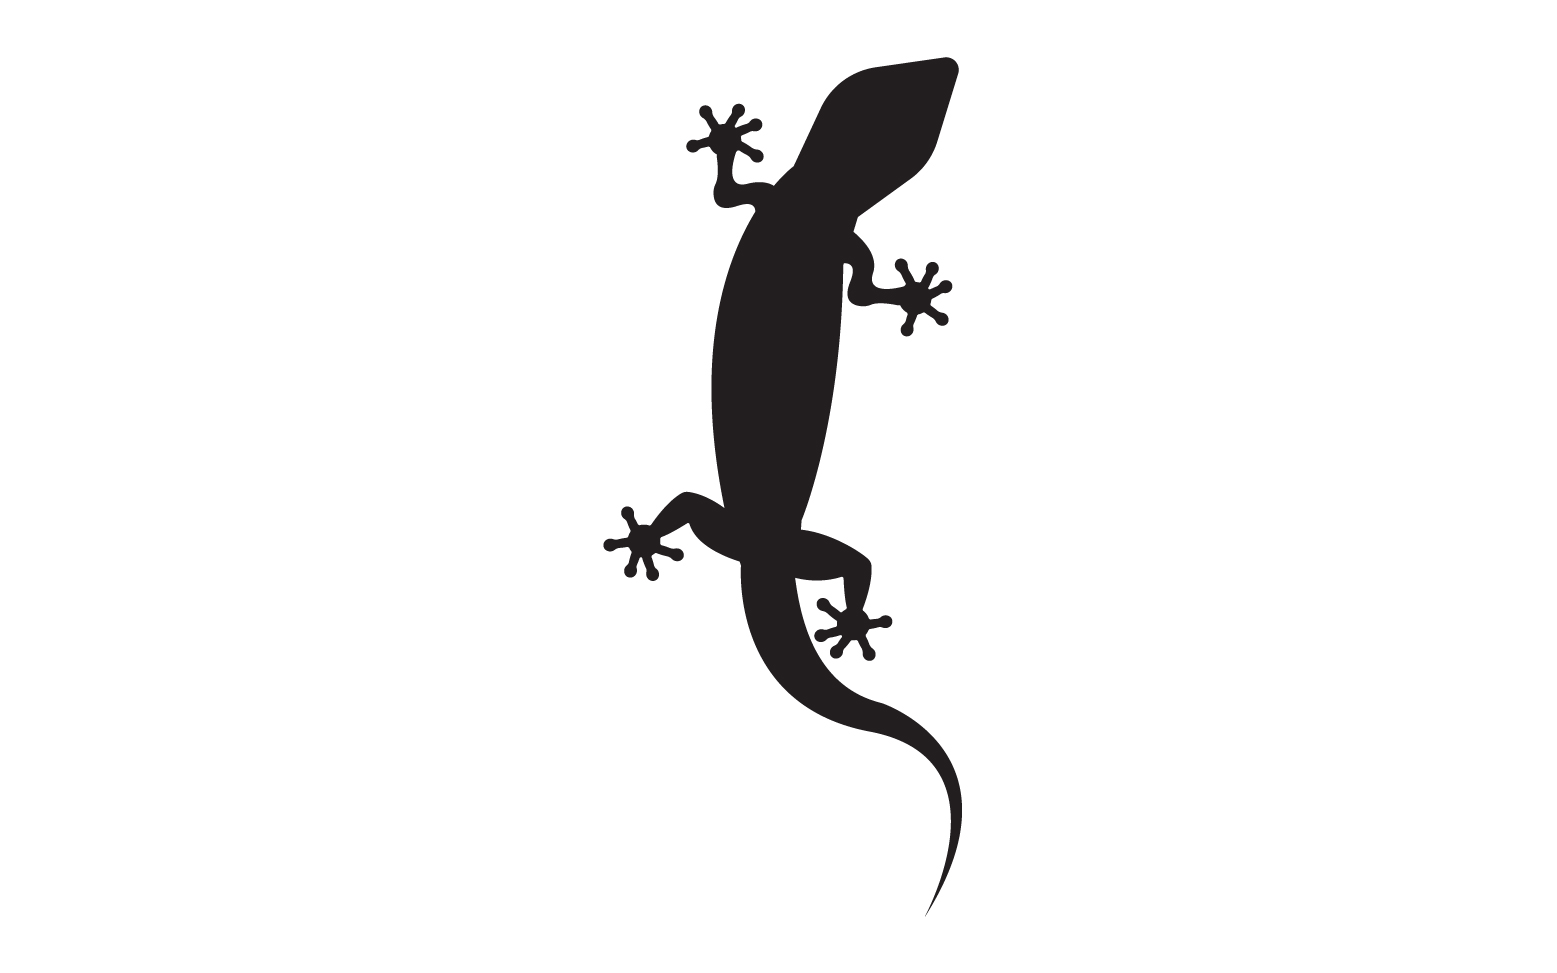 Lizard chameleon home lizard logo v35